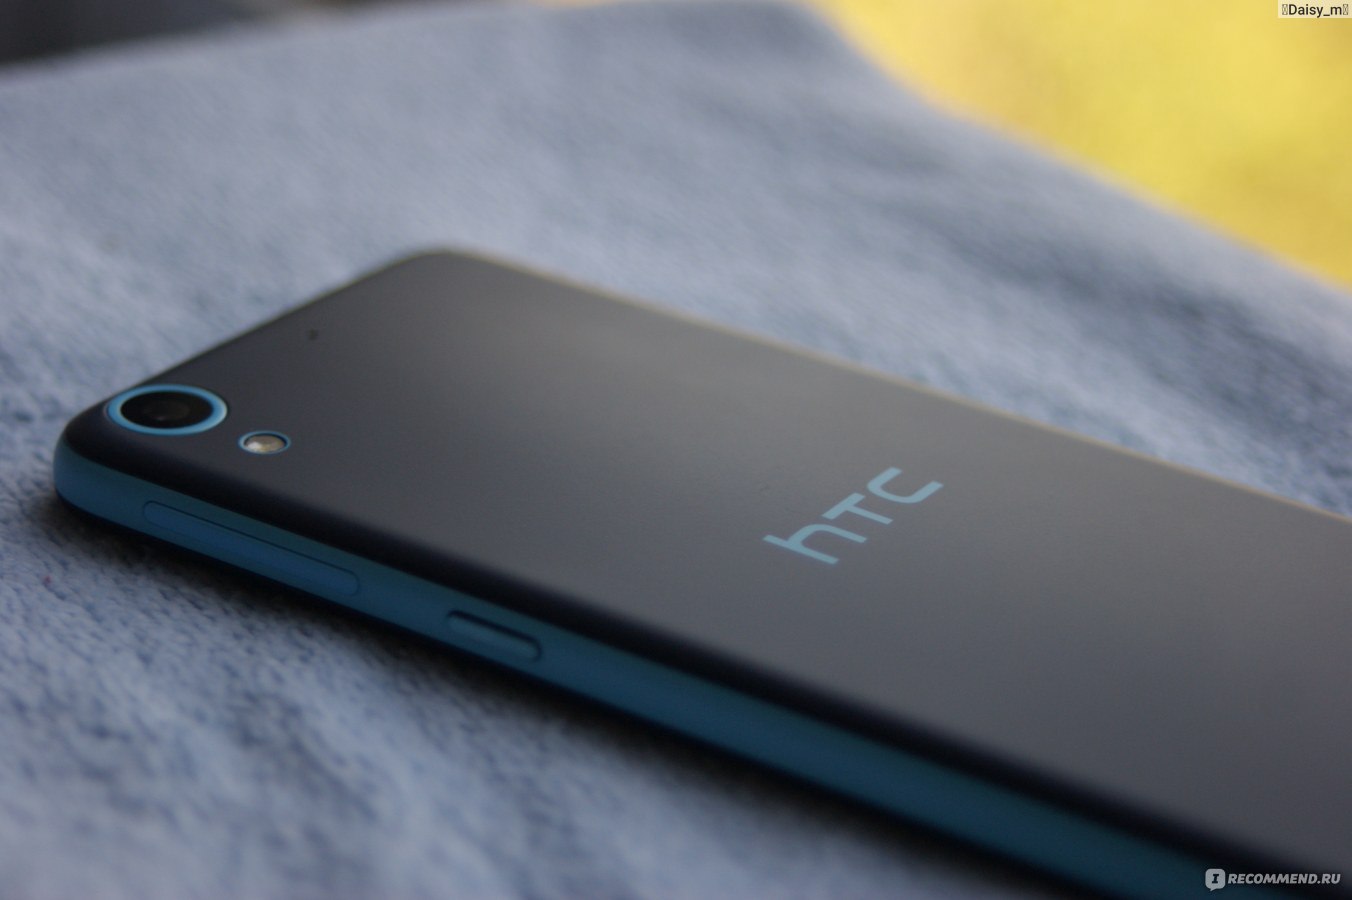 Замена экрана HTC U12 Plus в Казани — ремонт дисплея U12 Plus по низкой цене | RemLab